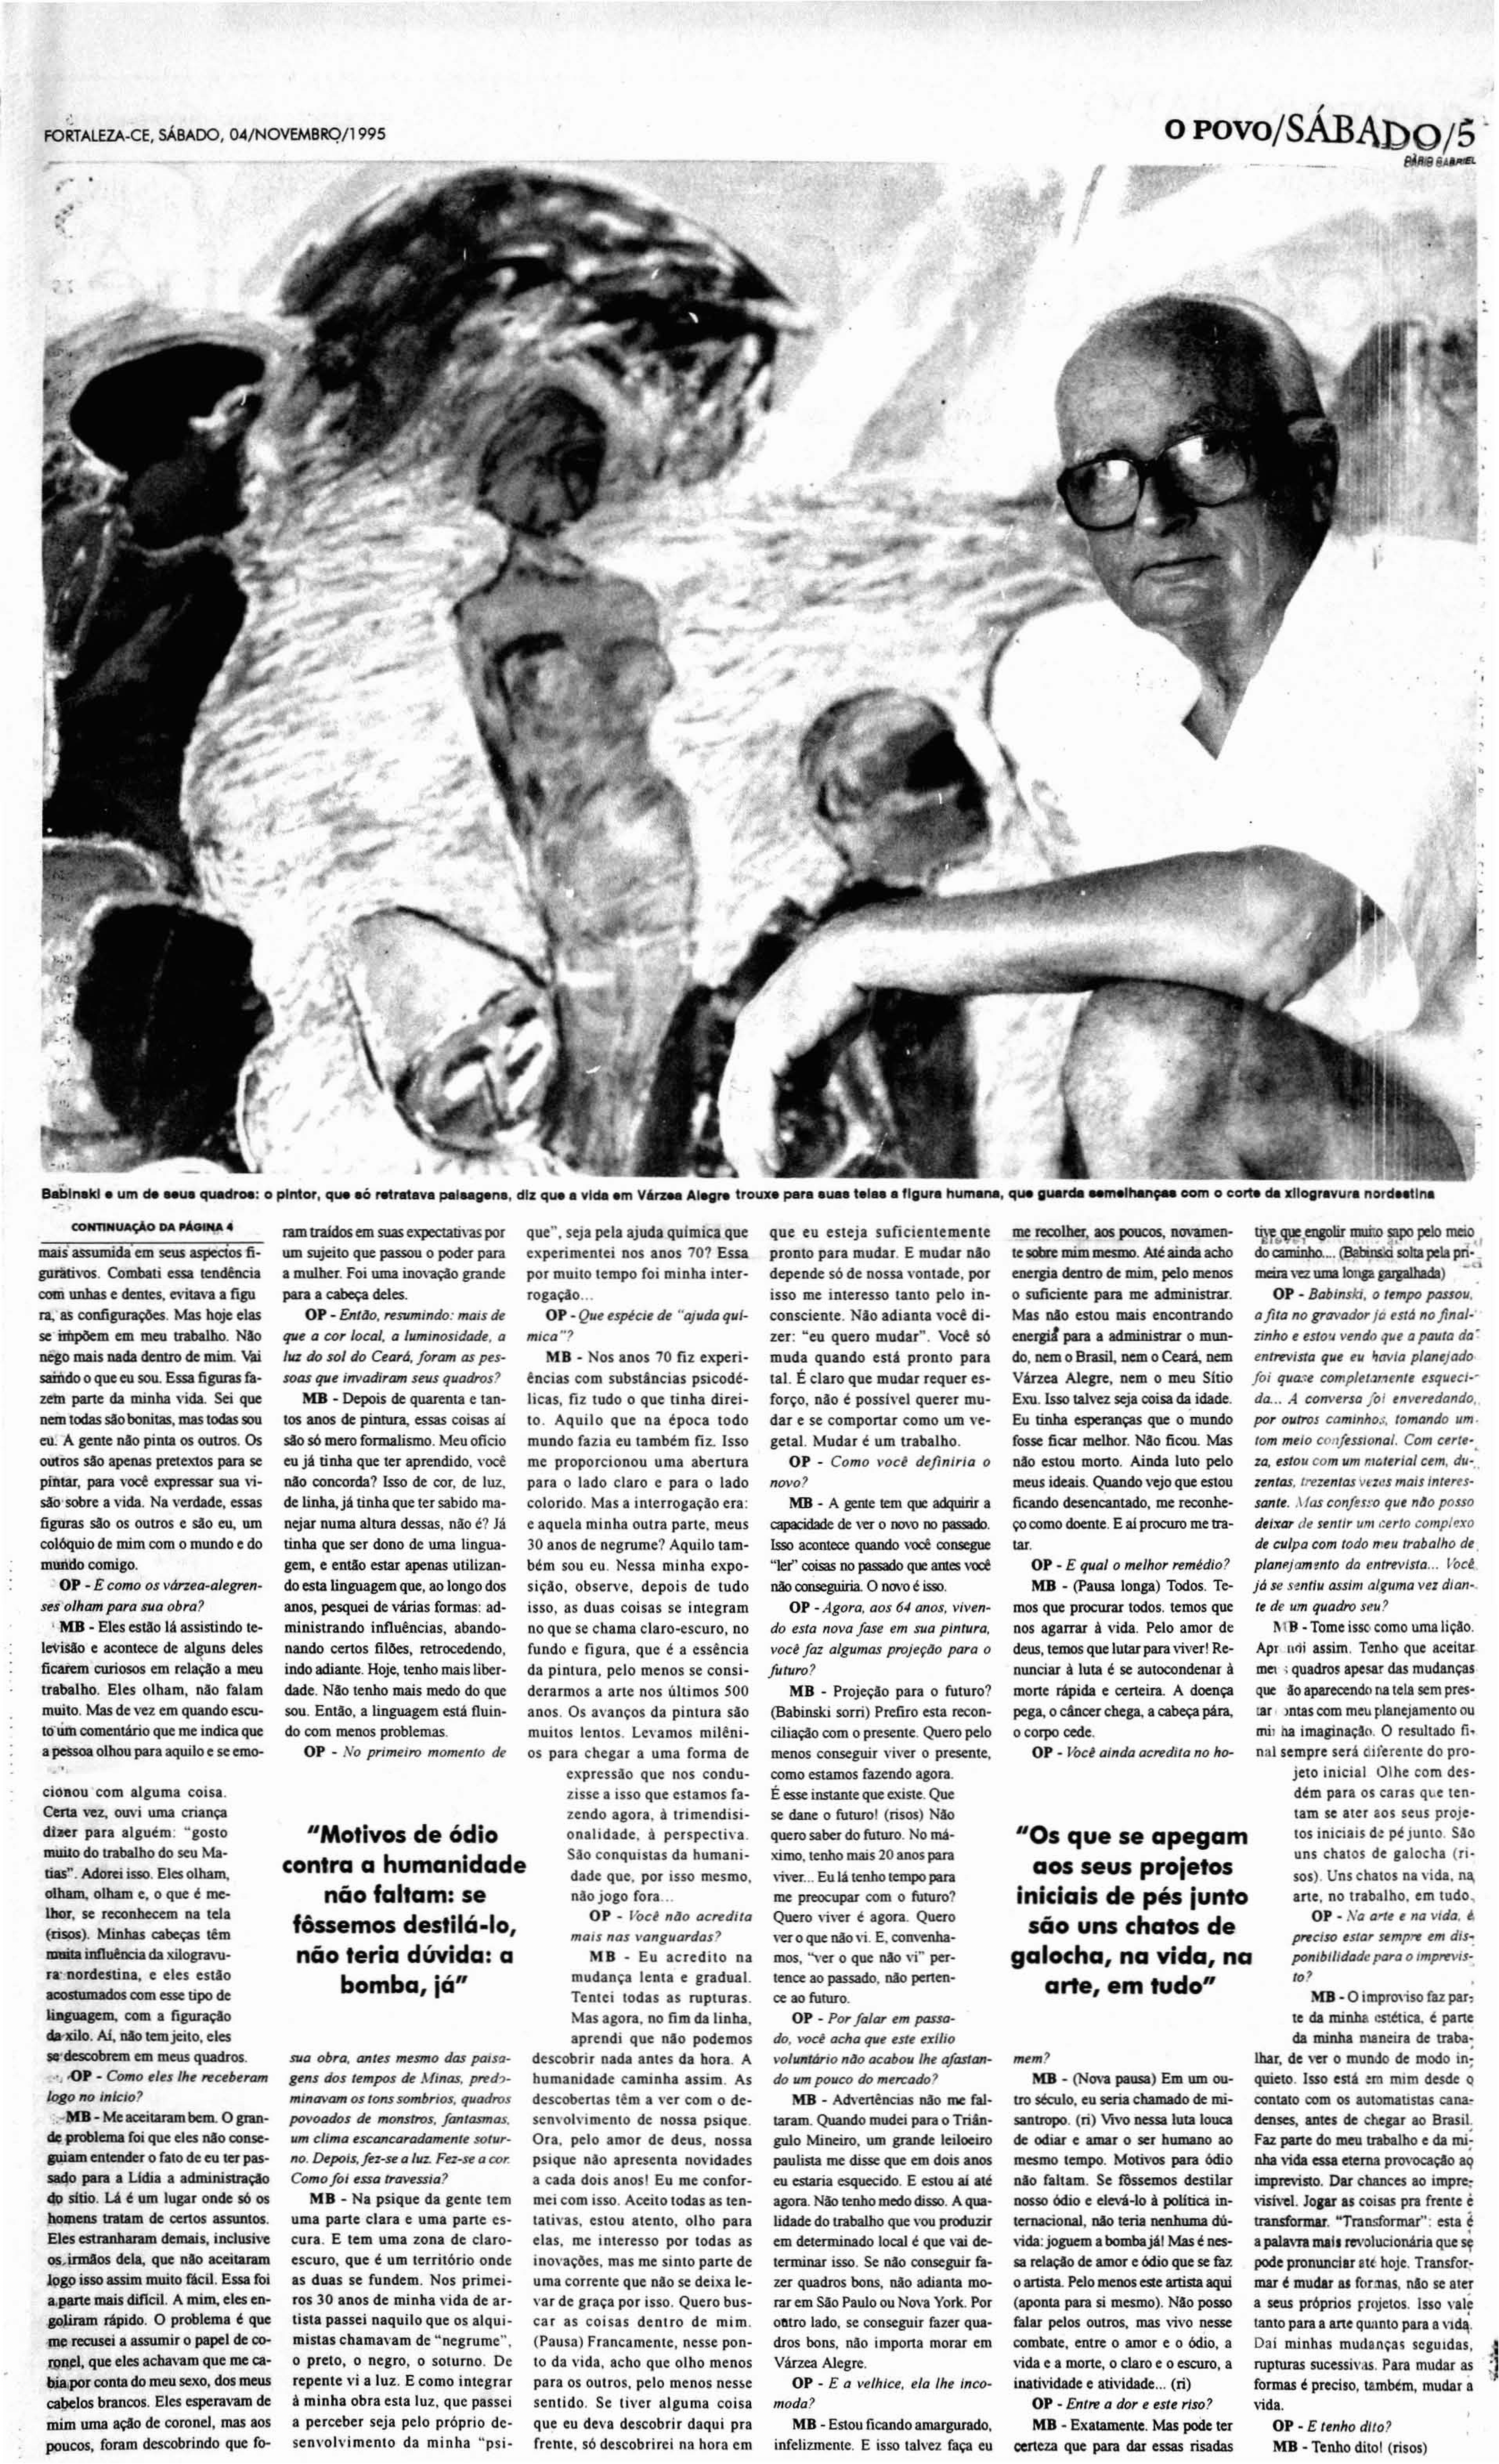 (Foto: O POVO.Doc)Matéria sobre Maciej Babinski, publicada em 4 novembro de 1995